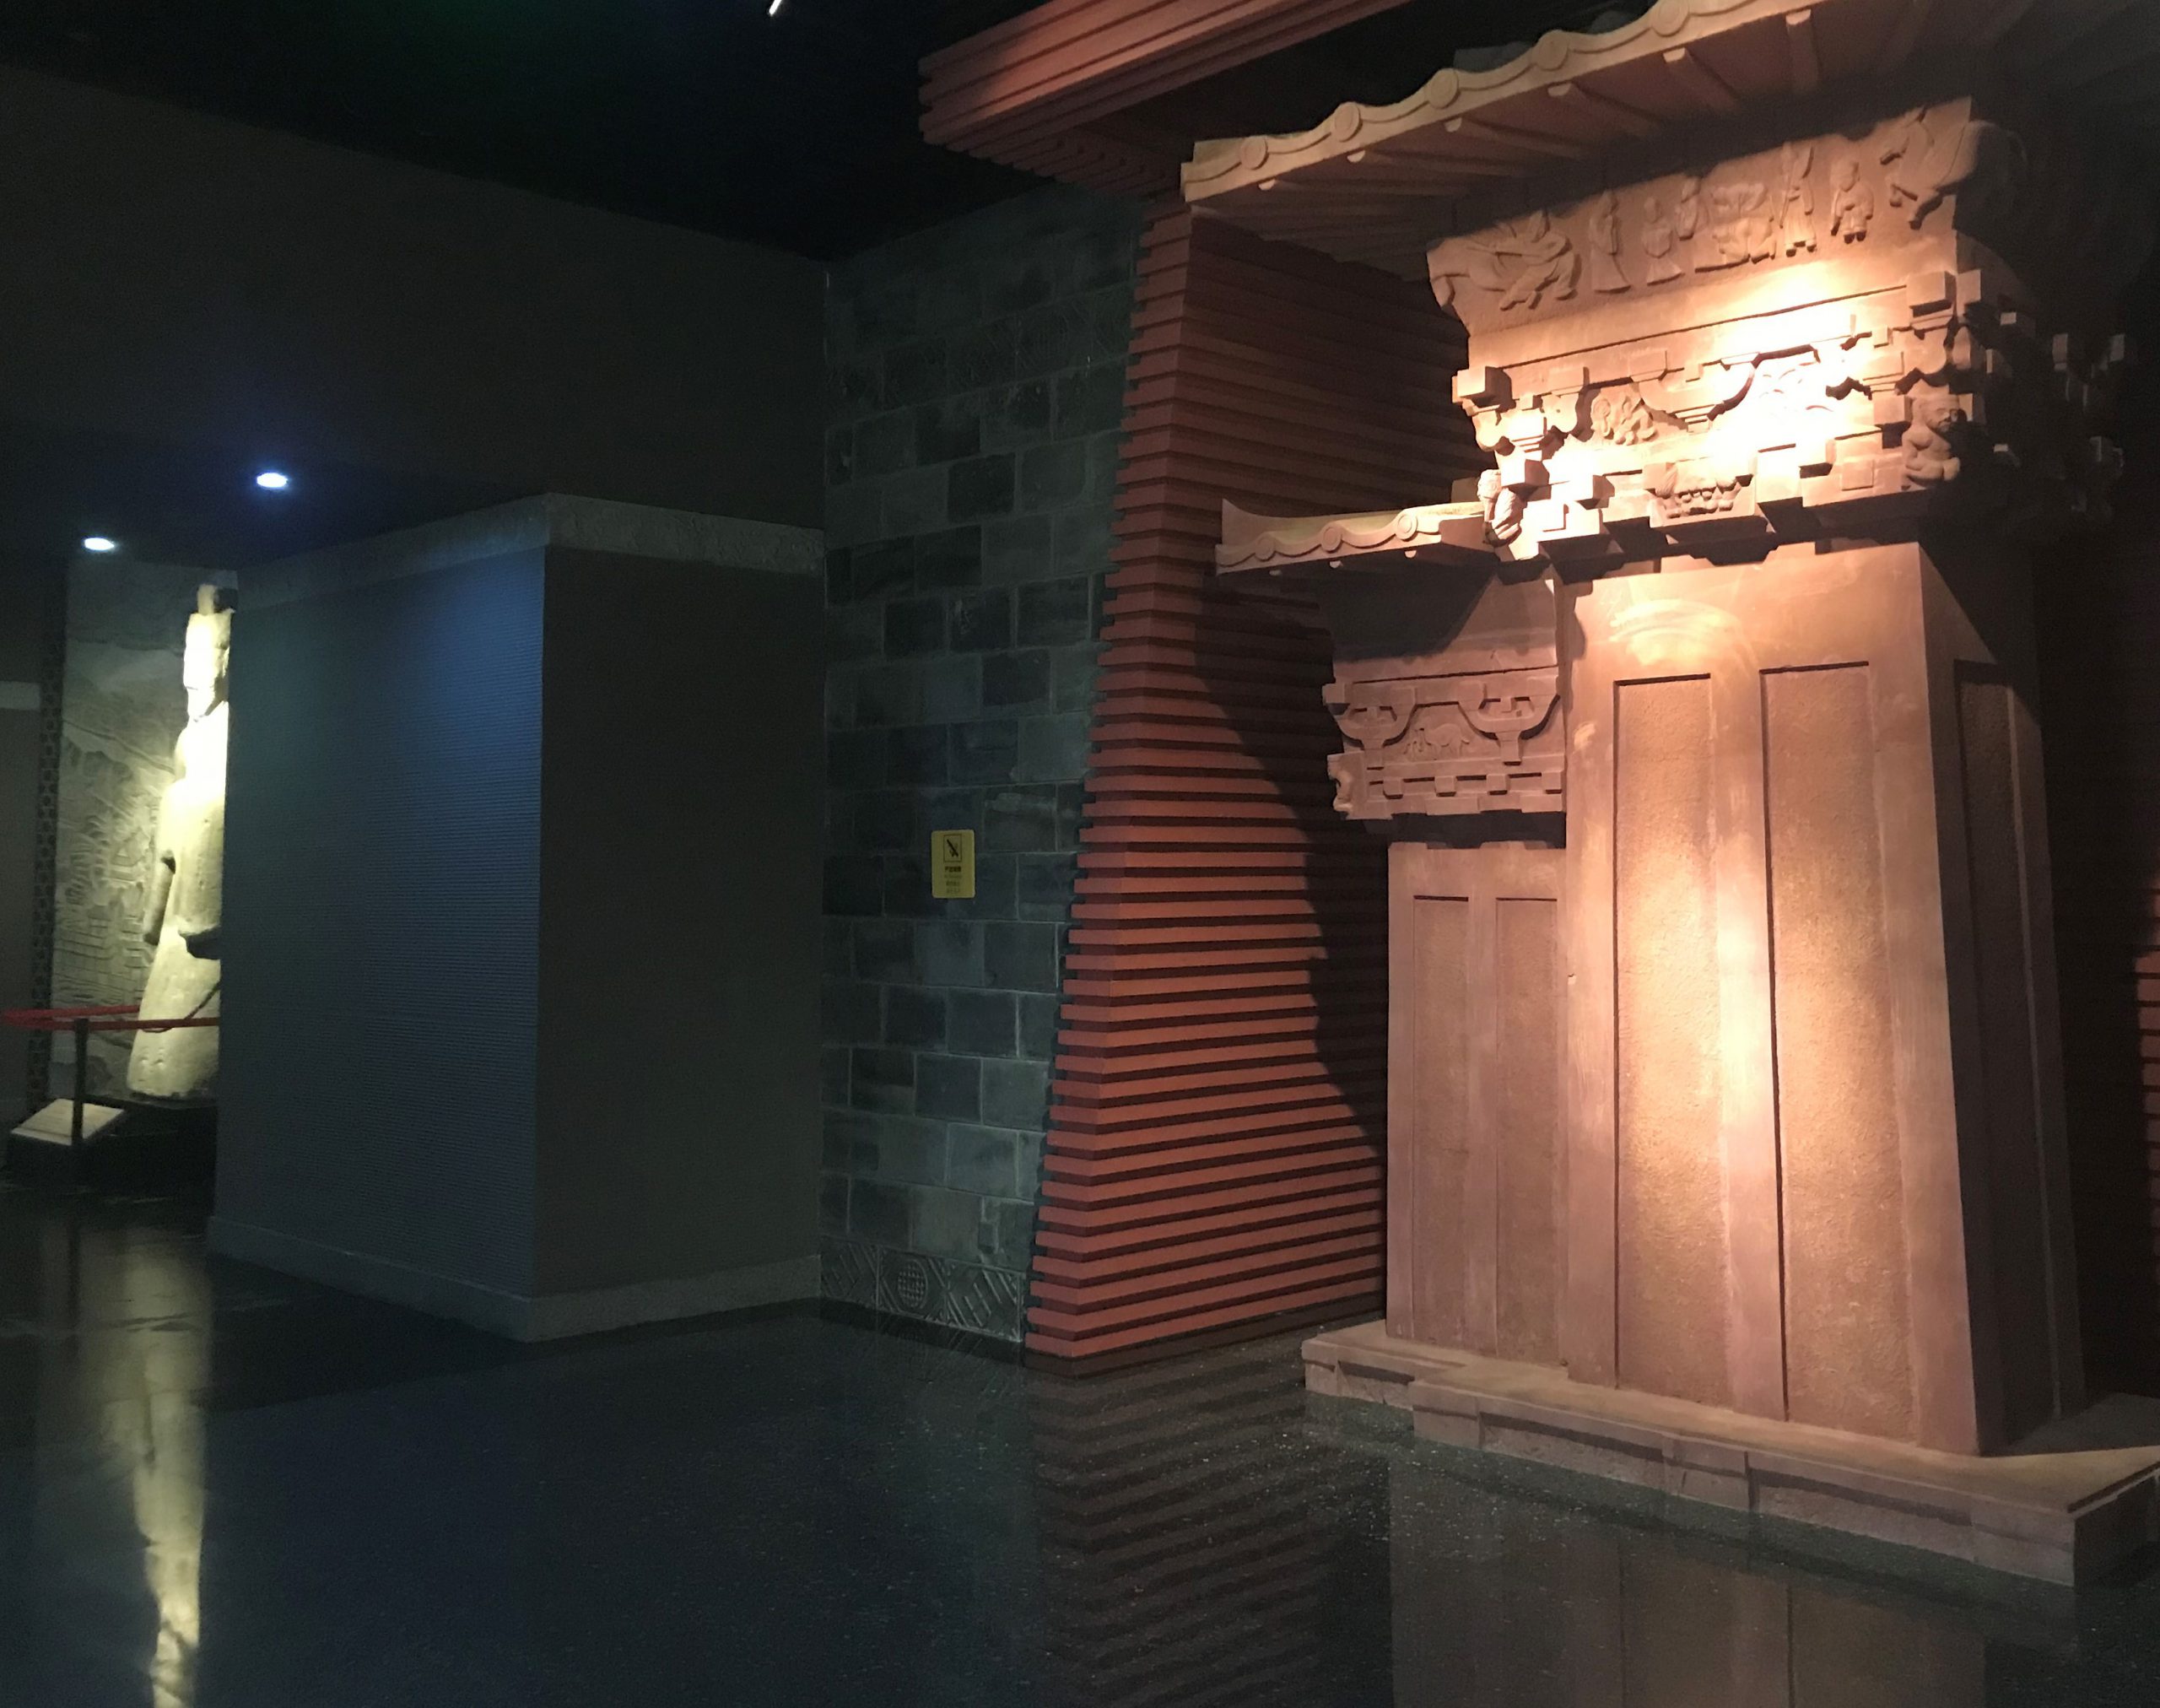 四川漢代陶石芸術館-四川博物院-成都